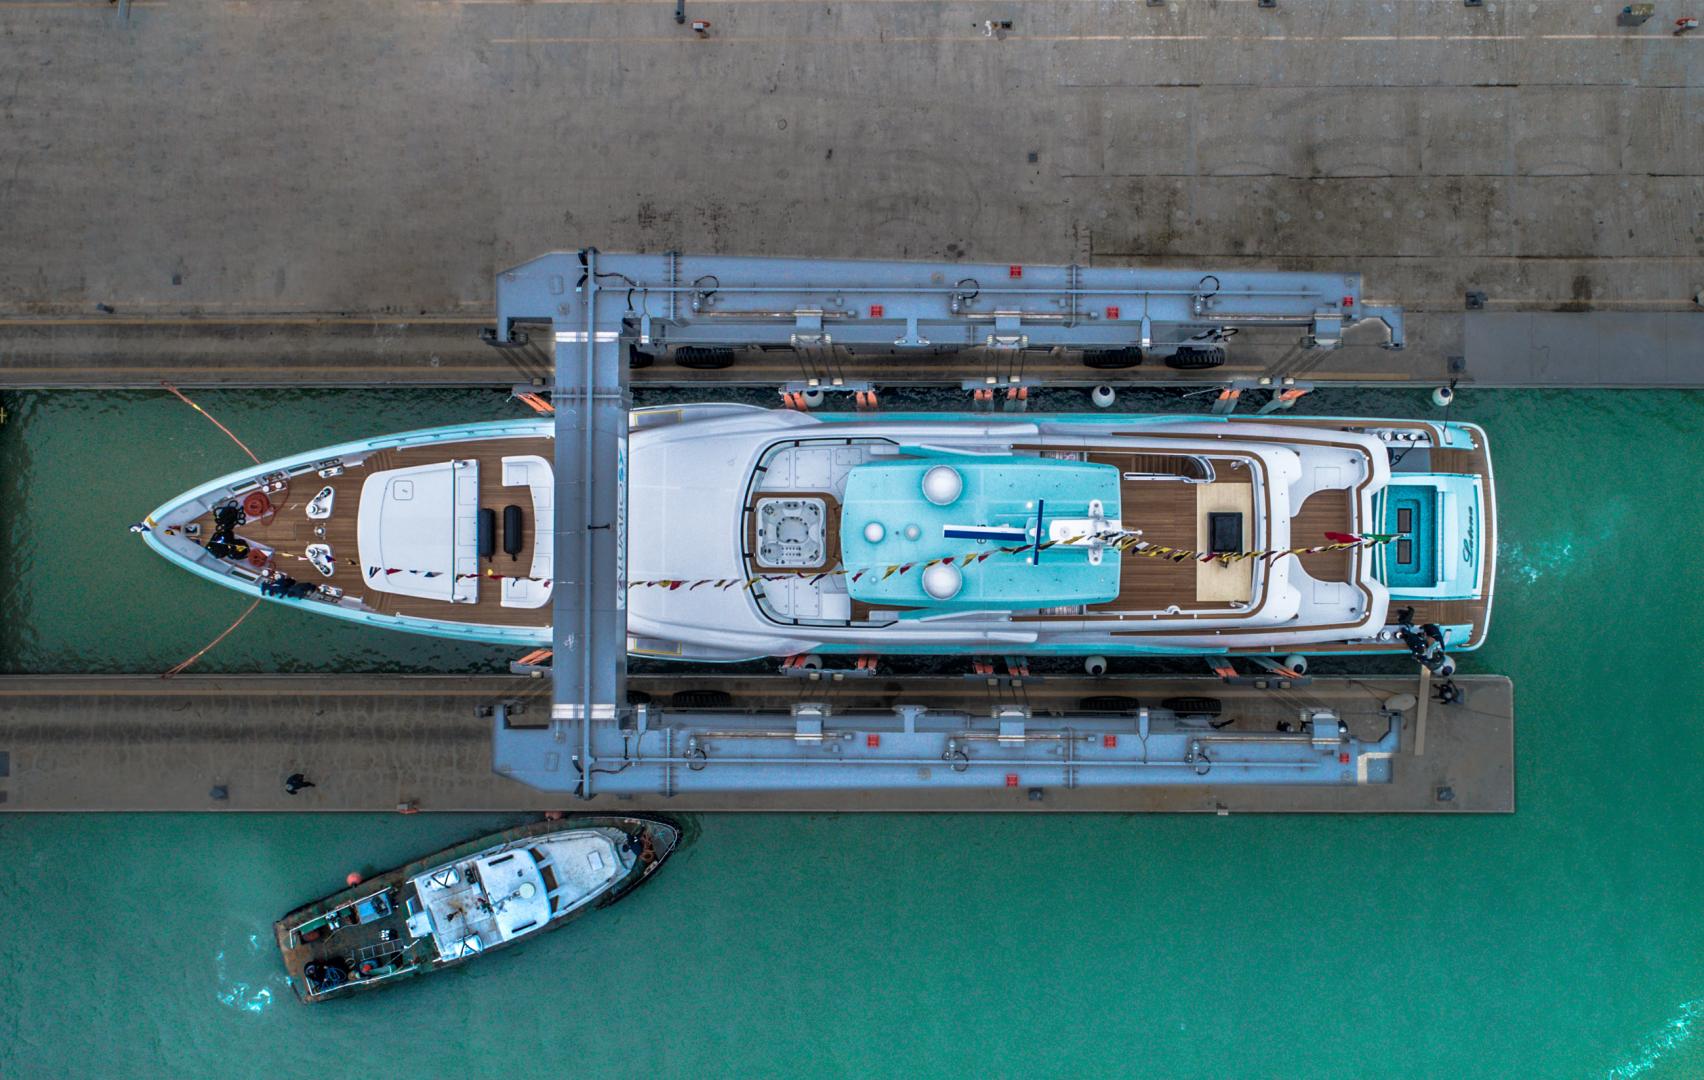 CRN’s new Superyacht Latona: 50 meters of Bespoke details